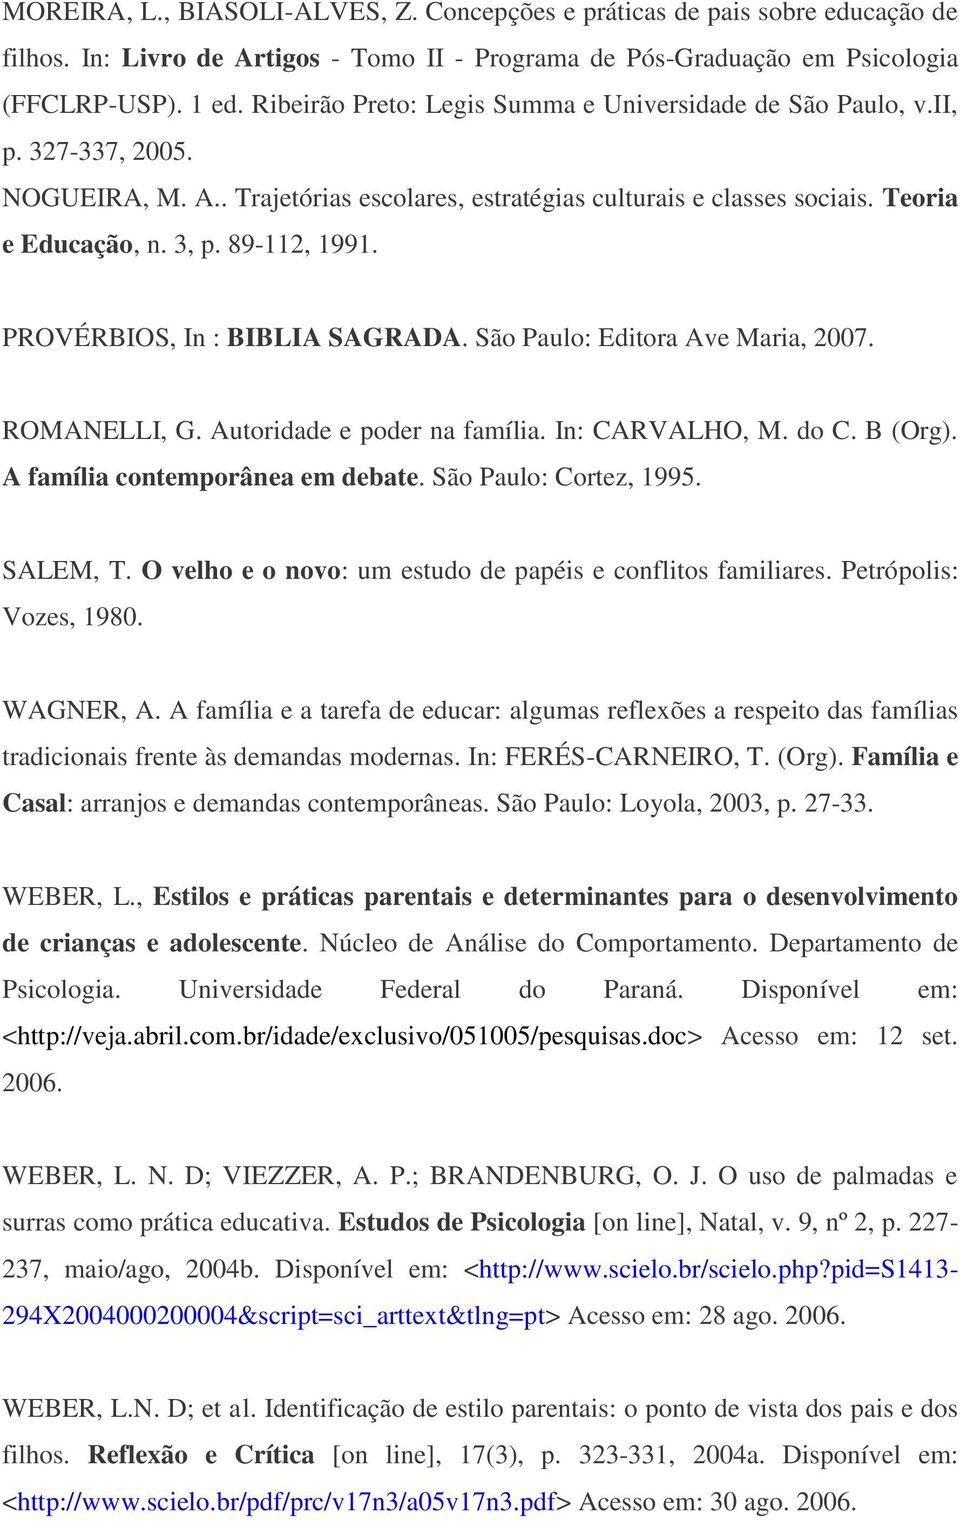 89-112, 1991. PROVÉRBIOS, In : BIBLIA SAGRADA. São Paulo: Editora Ave Maria, 2007. ROMANELLI, G. Autoridade e poder na família. In: CARVALHO, M. do C. B (Org). A família contemporânea em debate.